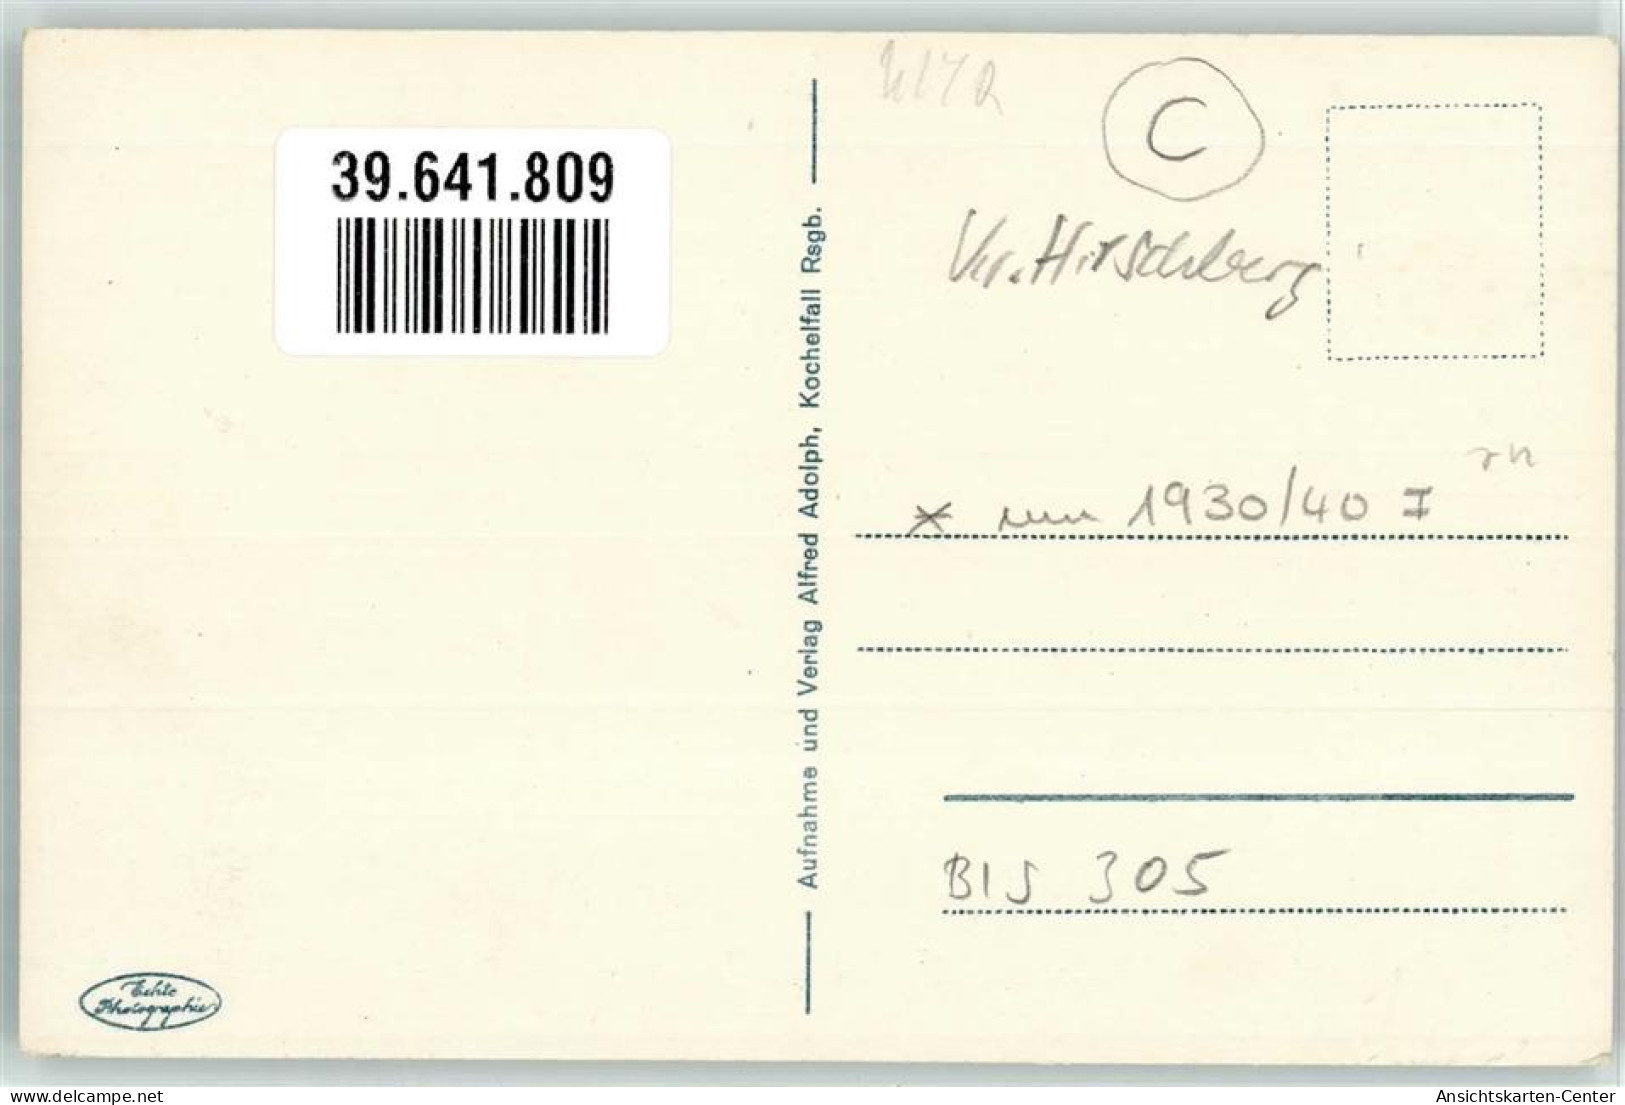 39641809 - Schreiberhau Szklarska Poreba - Pologne